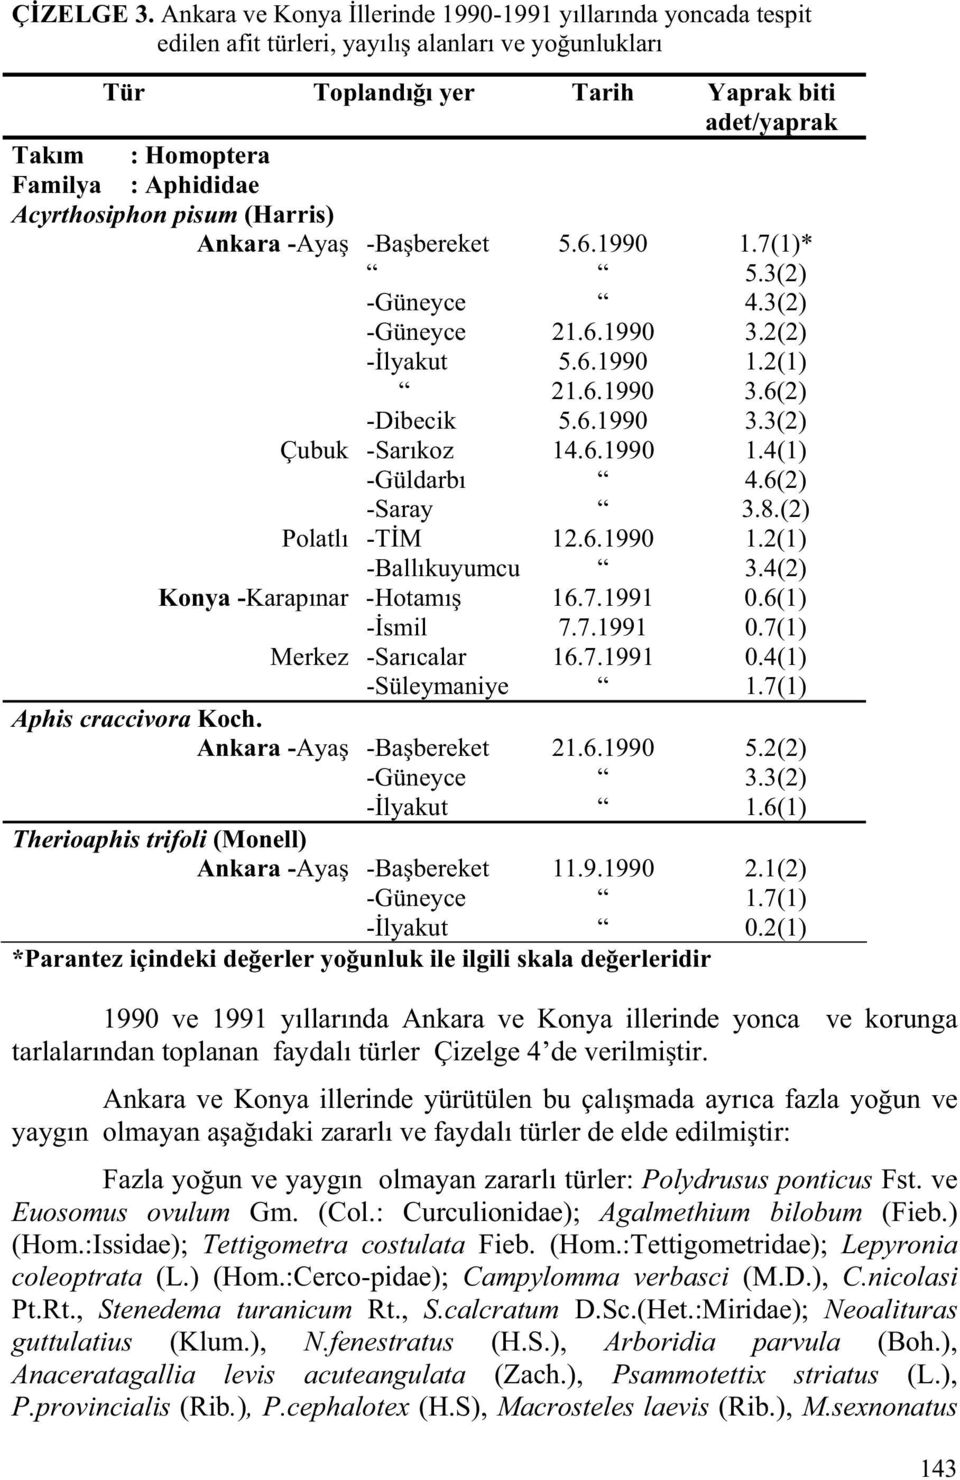 Aphididae Acyrthosiphon pisum (Harris) Ankara -Aya -Ba bereket 5.6.1990 1.7(1)* 5.3(2) -Güneyce 4.3(2) -Güneyce 21.6.1990 3.2(2) - lyakut 5.6.1990 1.2(1) 21.6.1990 3.6(2) -Dibecik 5.6.1990 3.3(2) Çubuk -Sarıkoz 14.